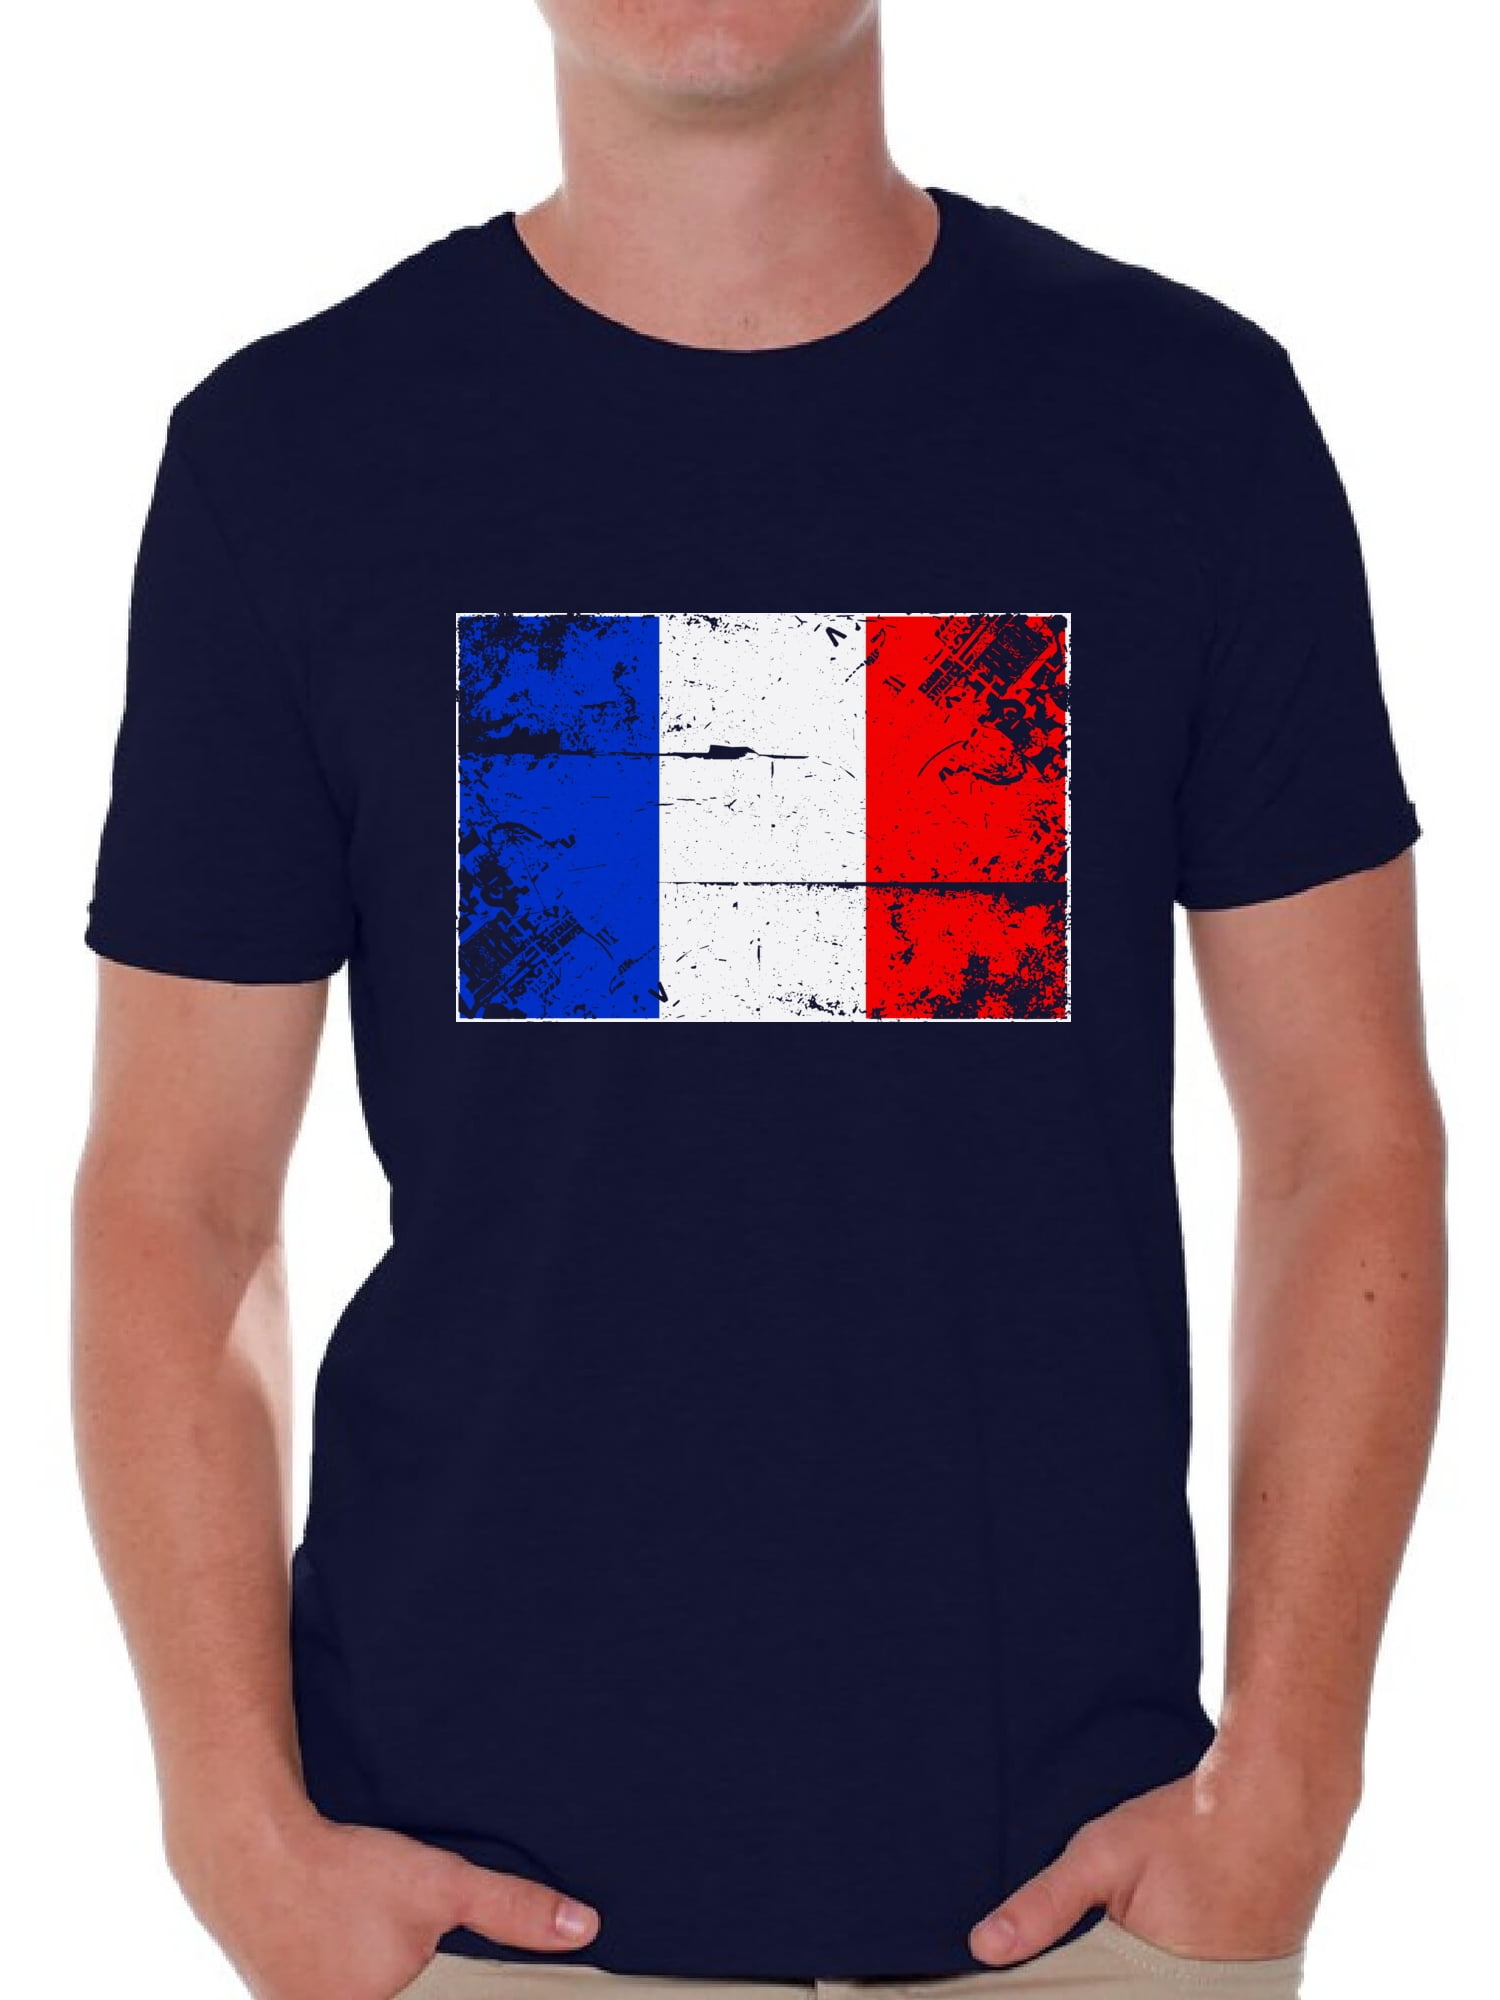 France Soccer Ball Shirt French Flag Women's Shirt Soccer Gifts from France France Soccer Shirt France 2018 Shirt French Gifts for Women